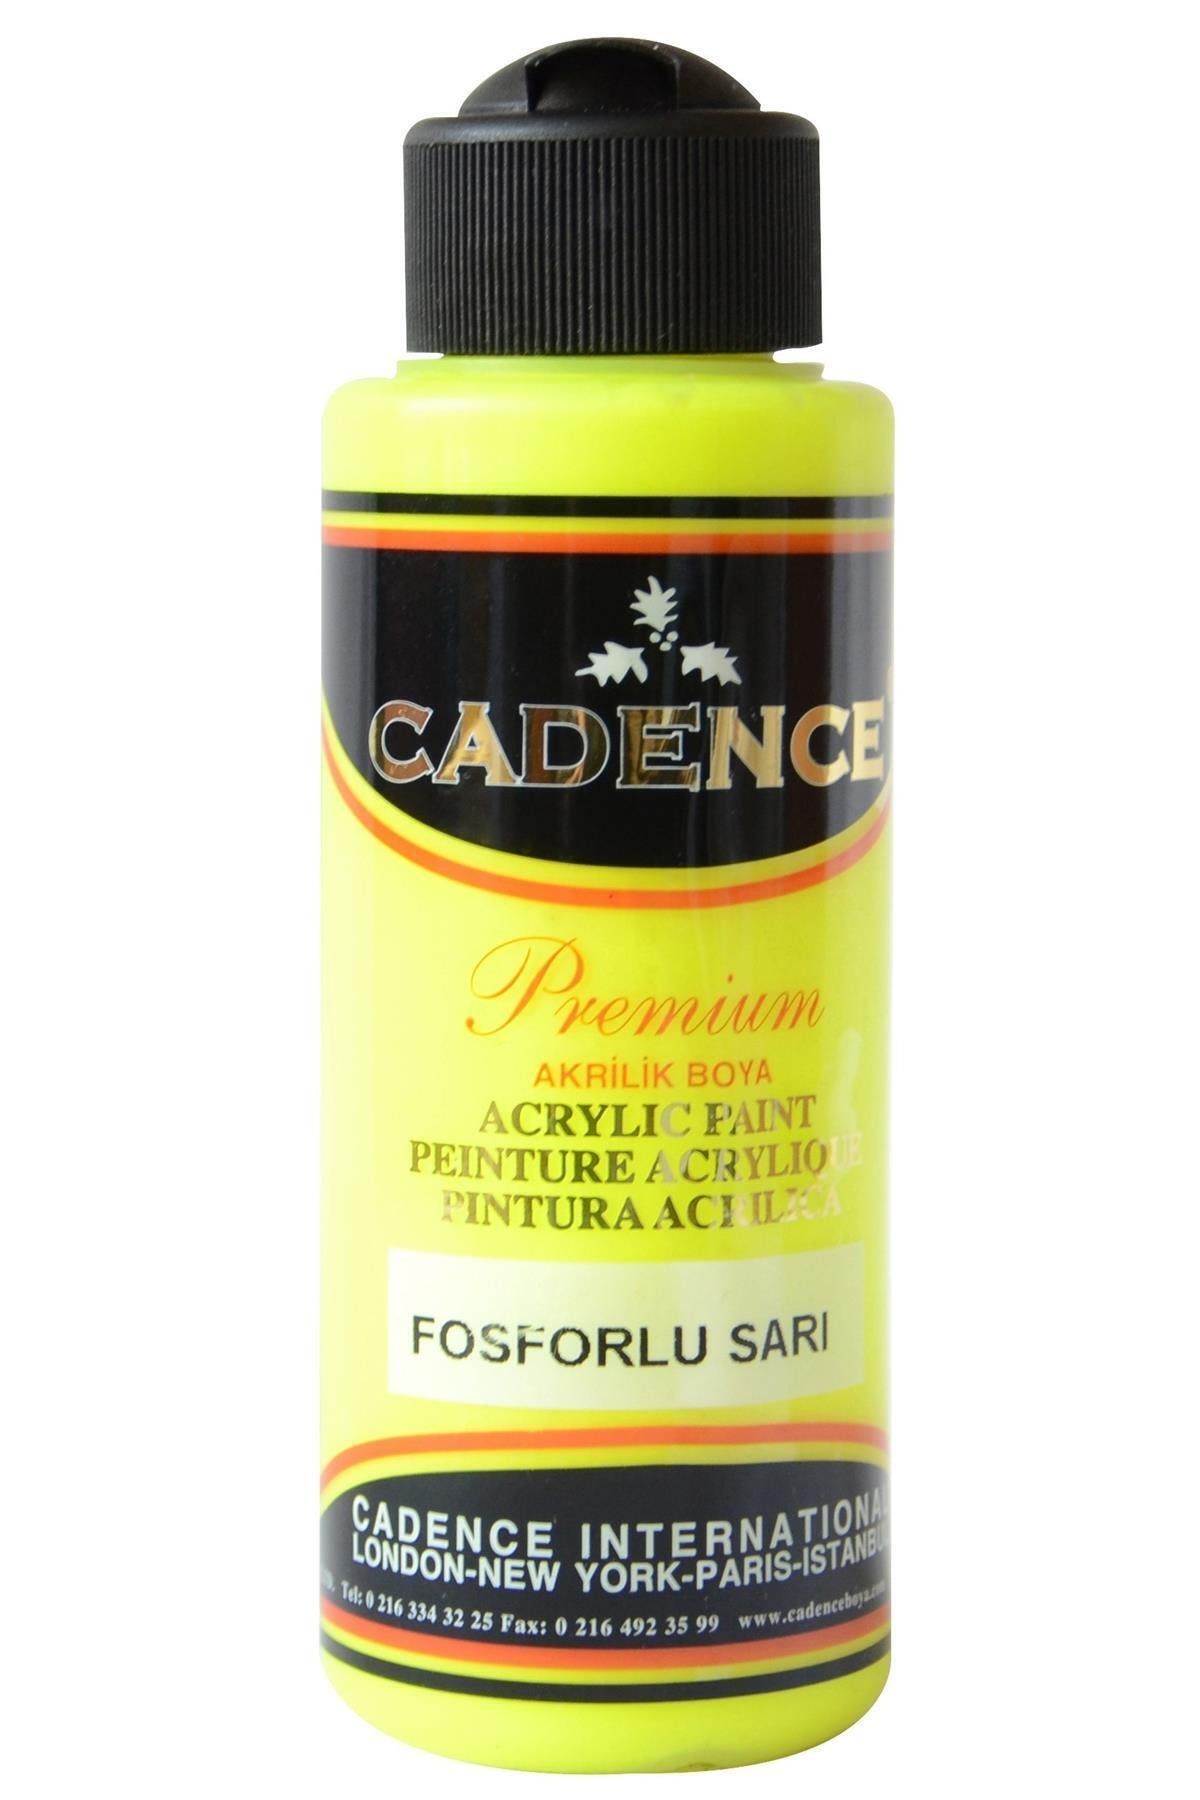 Cadence Premium Fosforlu Sarı Akrilik Boya 120 ml